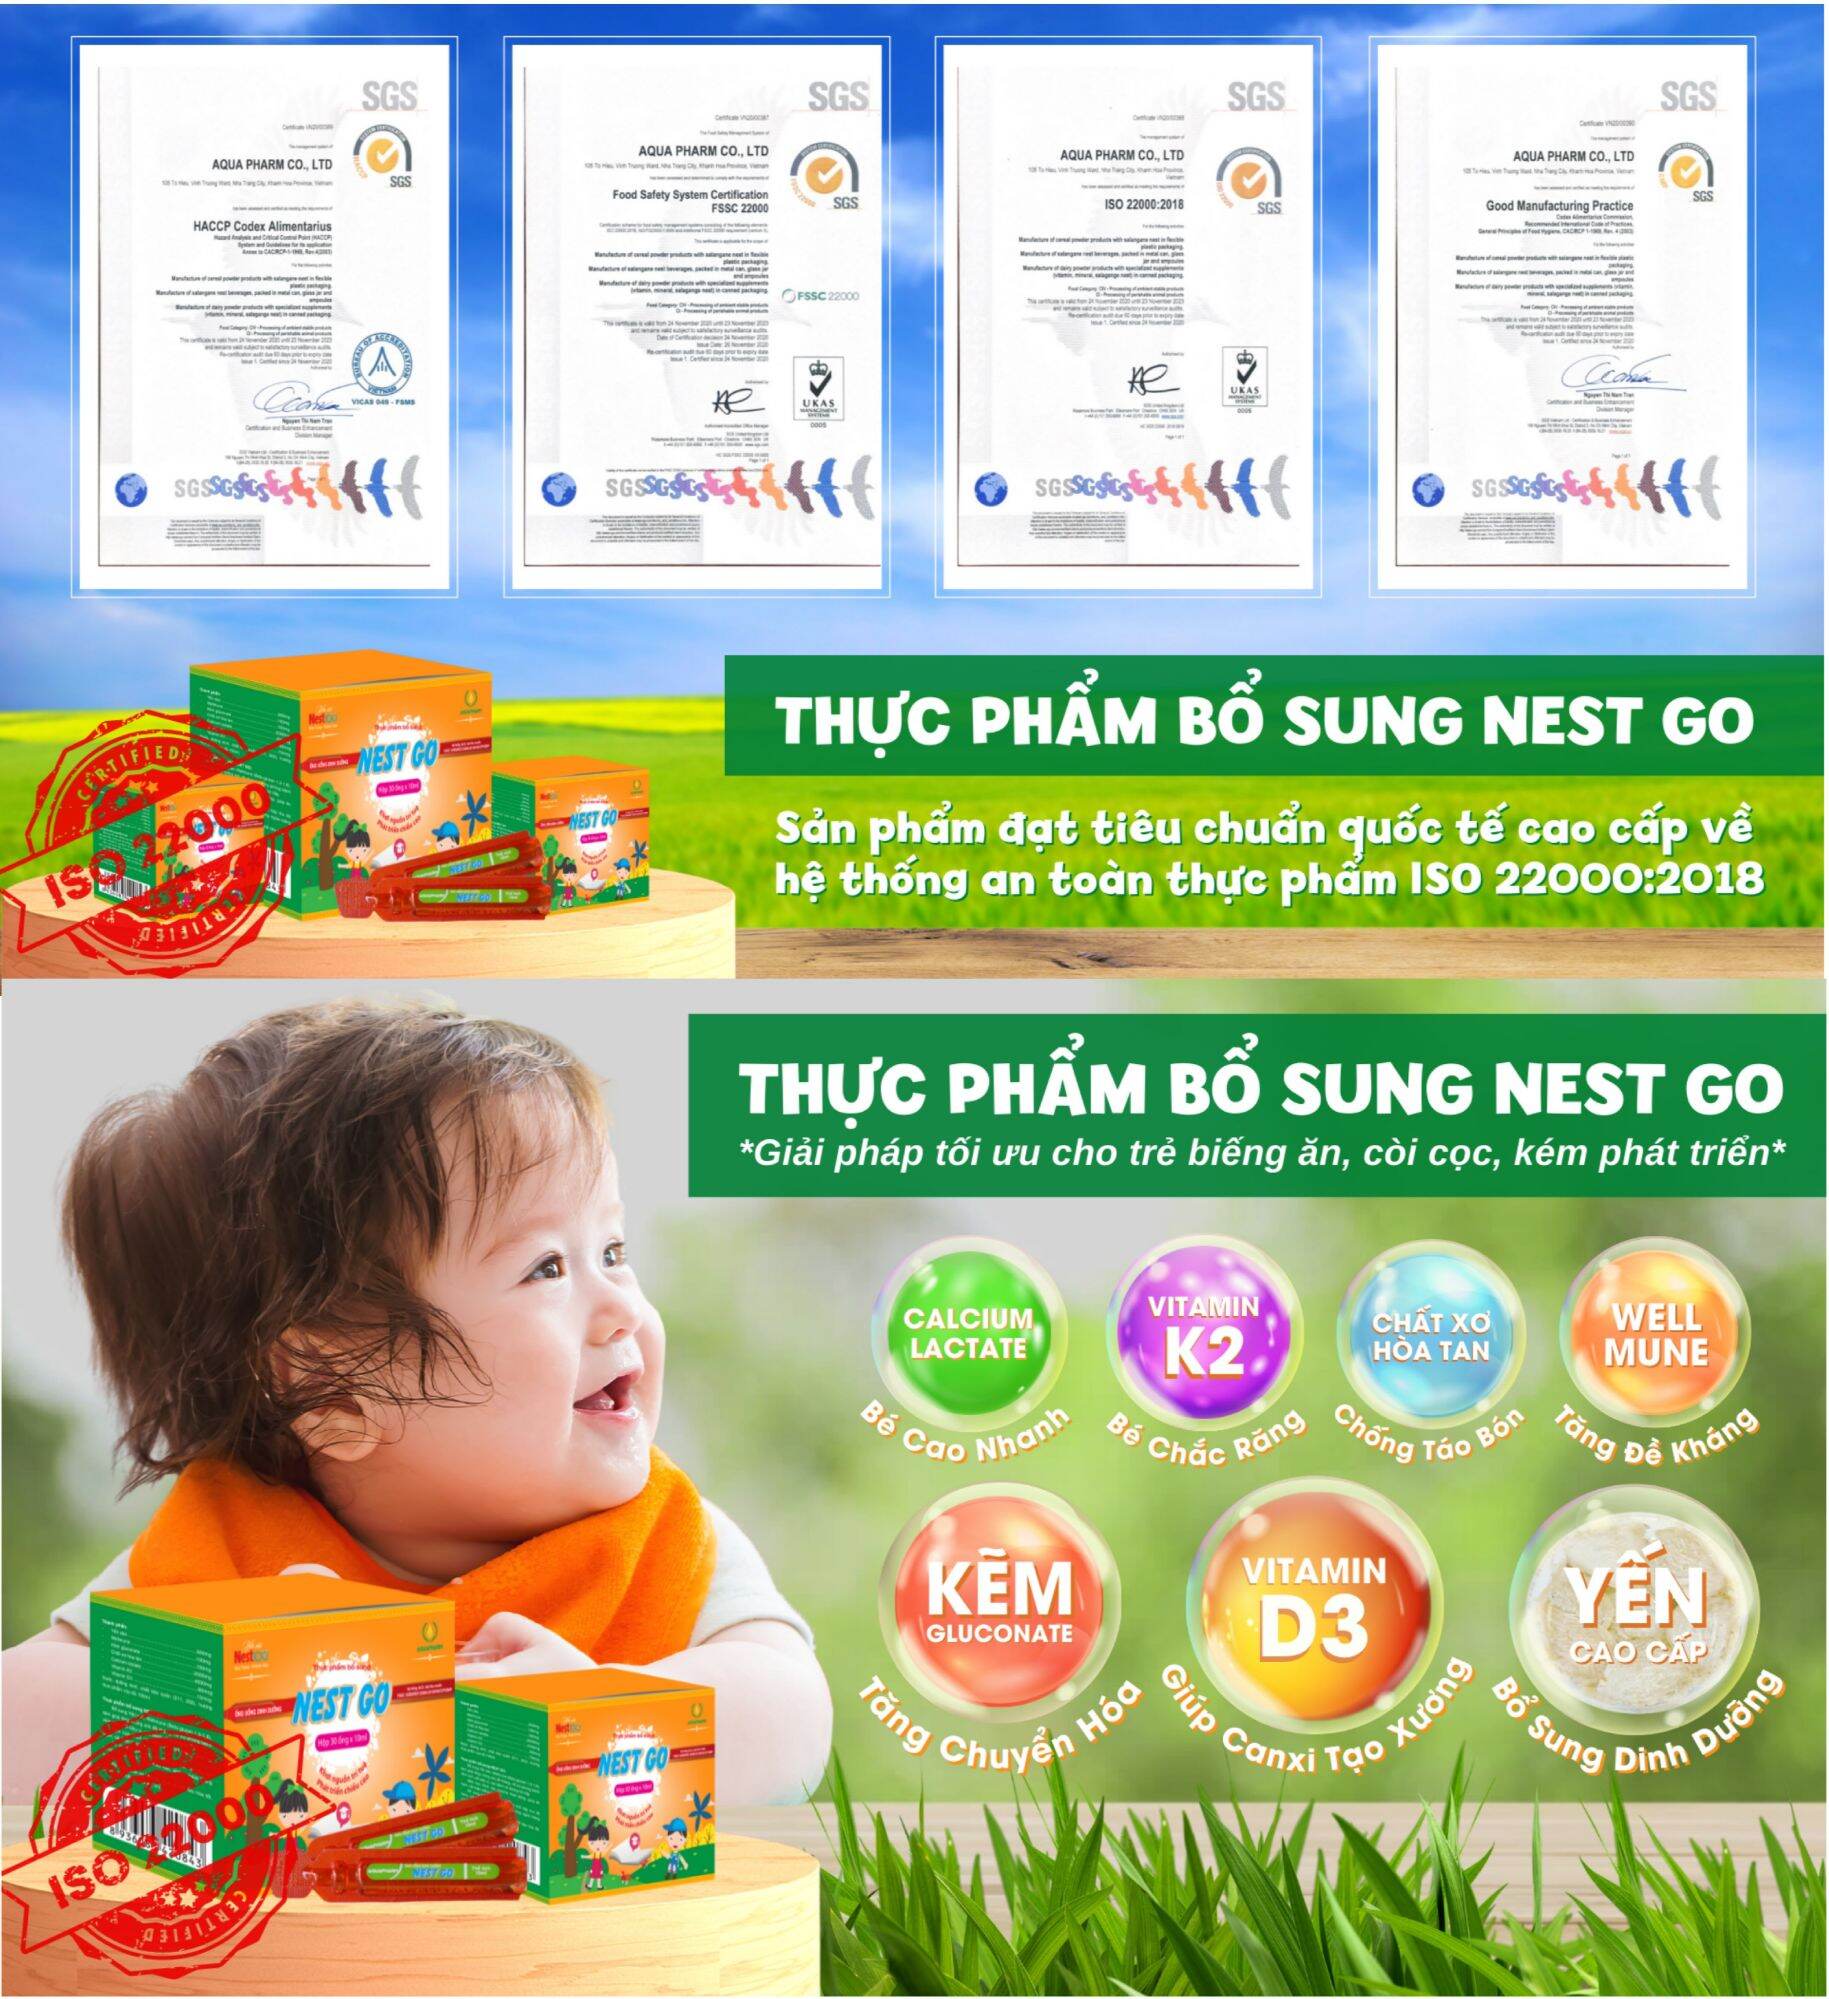 THỰC PHẨM BỔ SUNG NEST GO 30 ống, trẻ từ 12 tháng tuổi biếng ăn, còi cọc, hay ốm vặt, đạt tiêu chuẩn quốc tế ATTP ISO 22000:2018